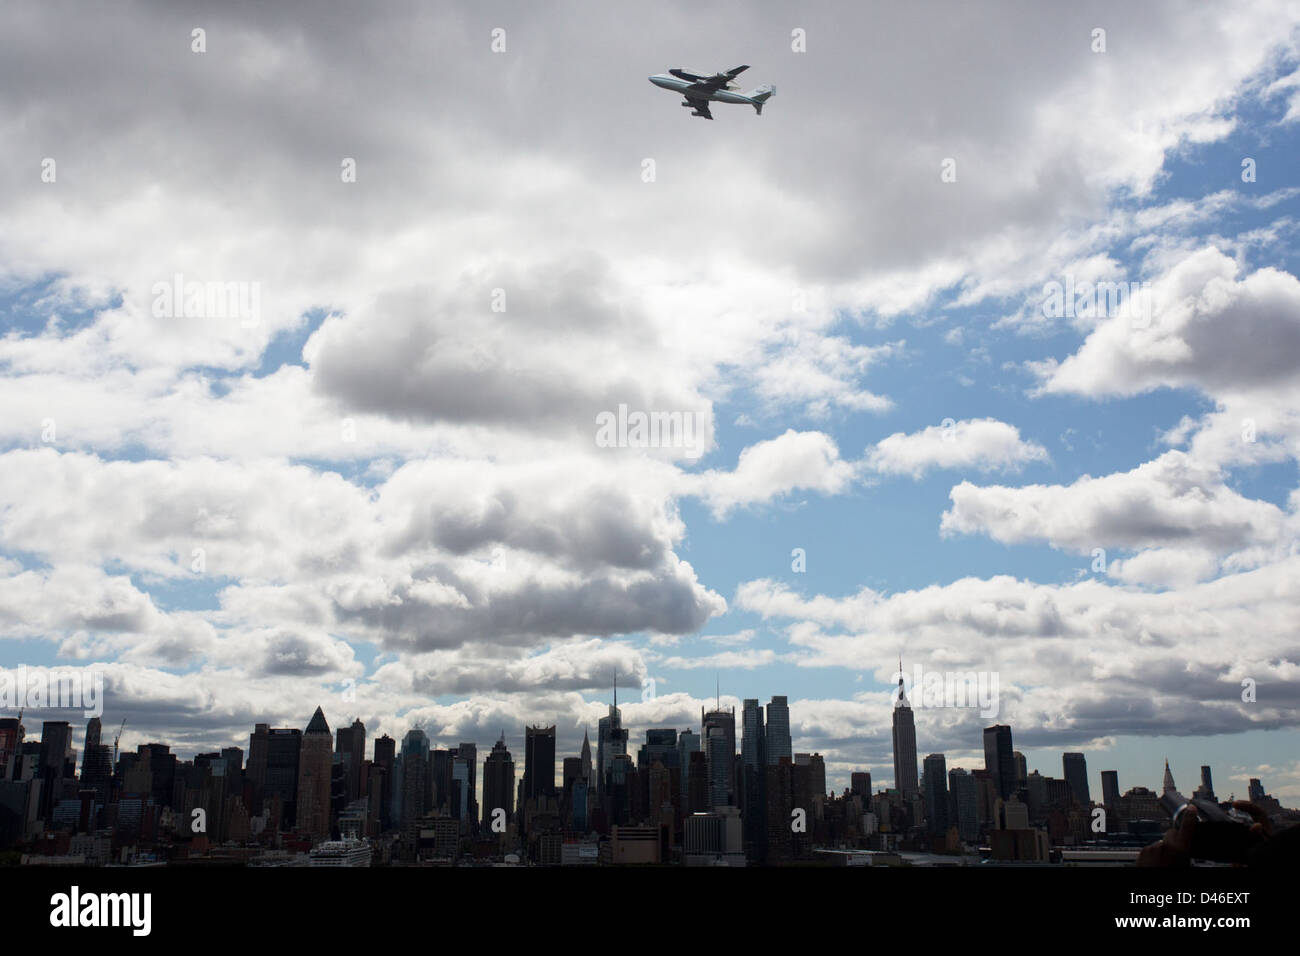 Shuttle Enterprise Flight To New York (201204270020HQ) Stock Photo